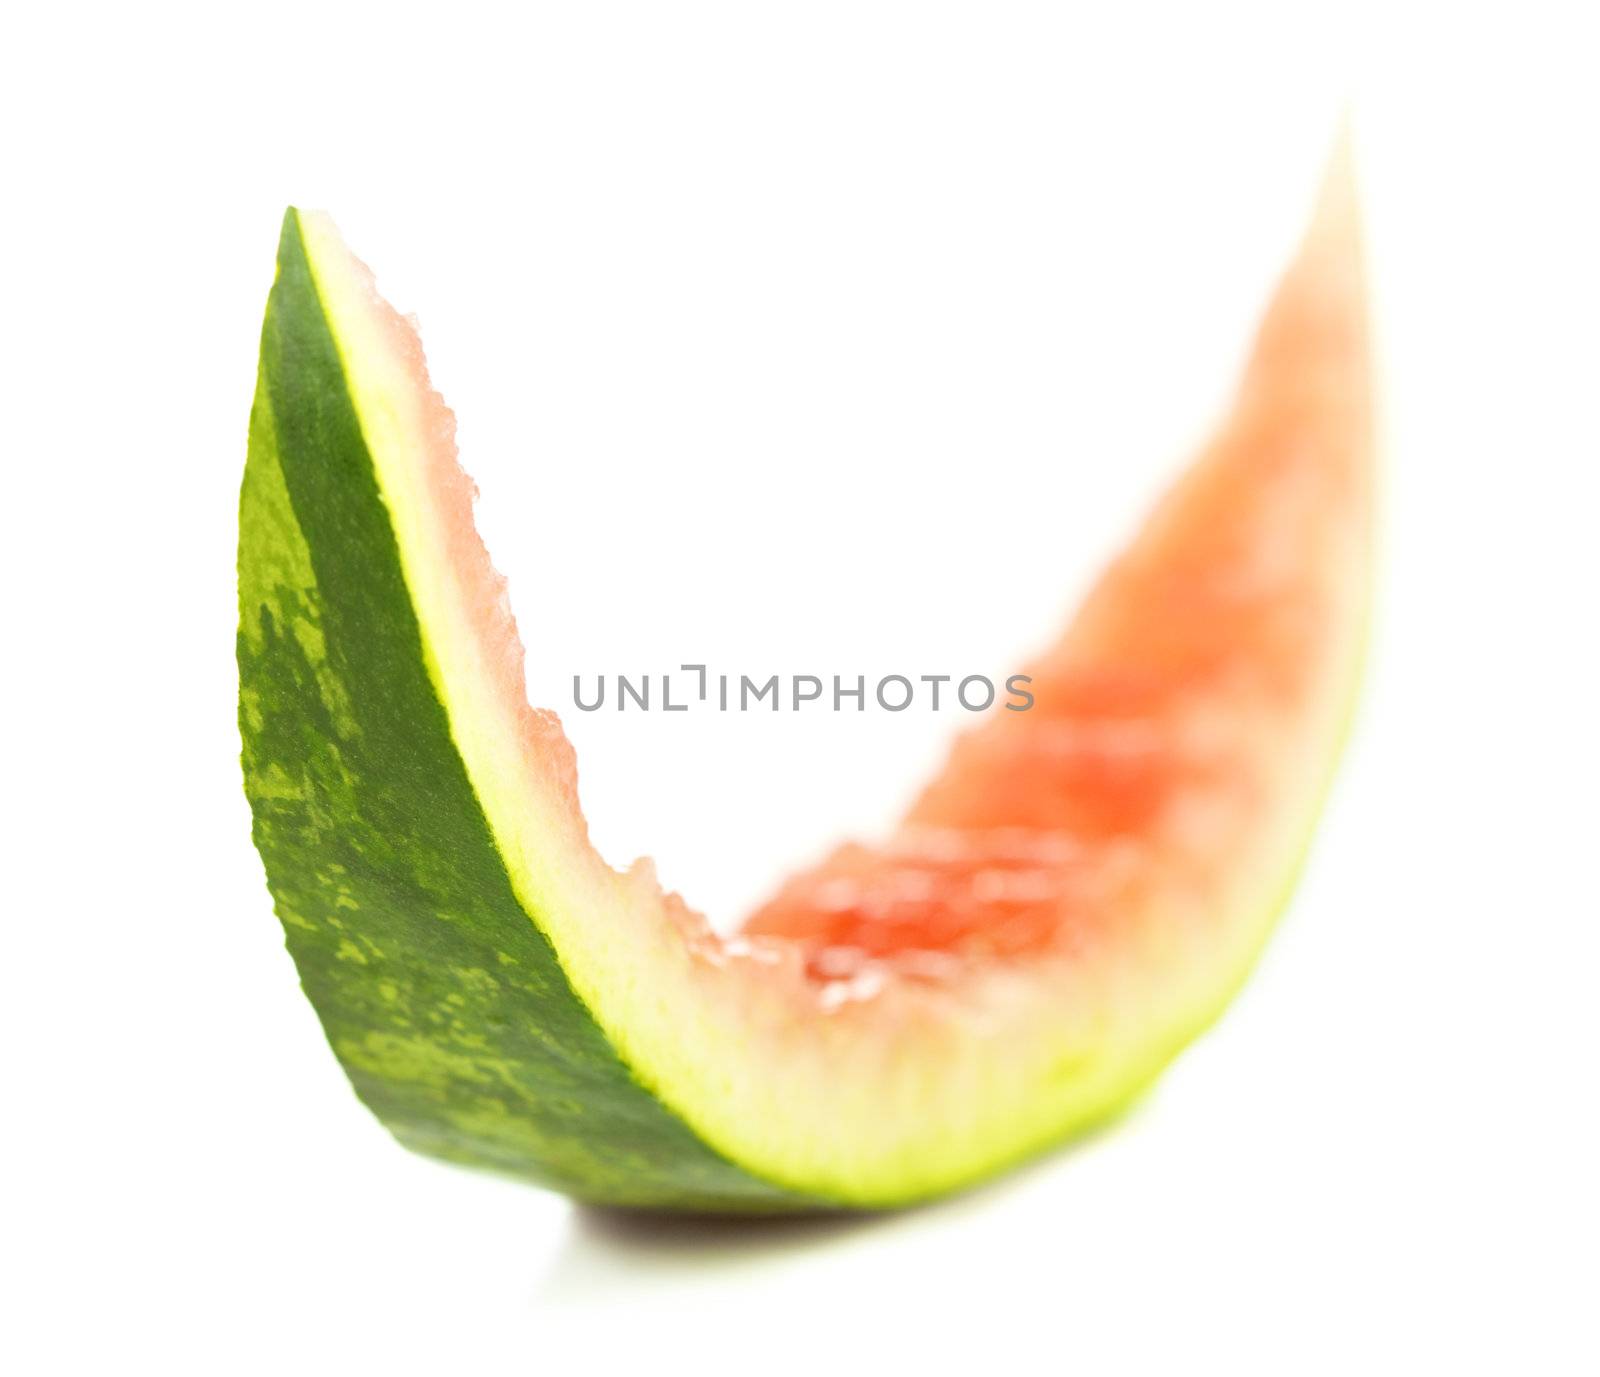 Peel of Watermelon by petr_malyshev